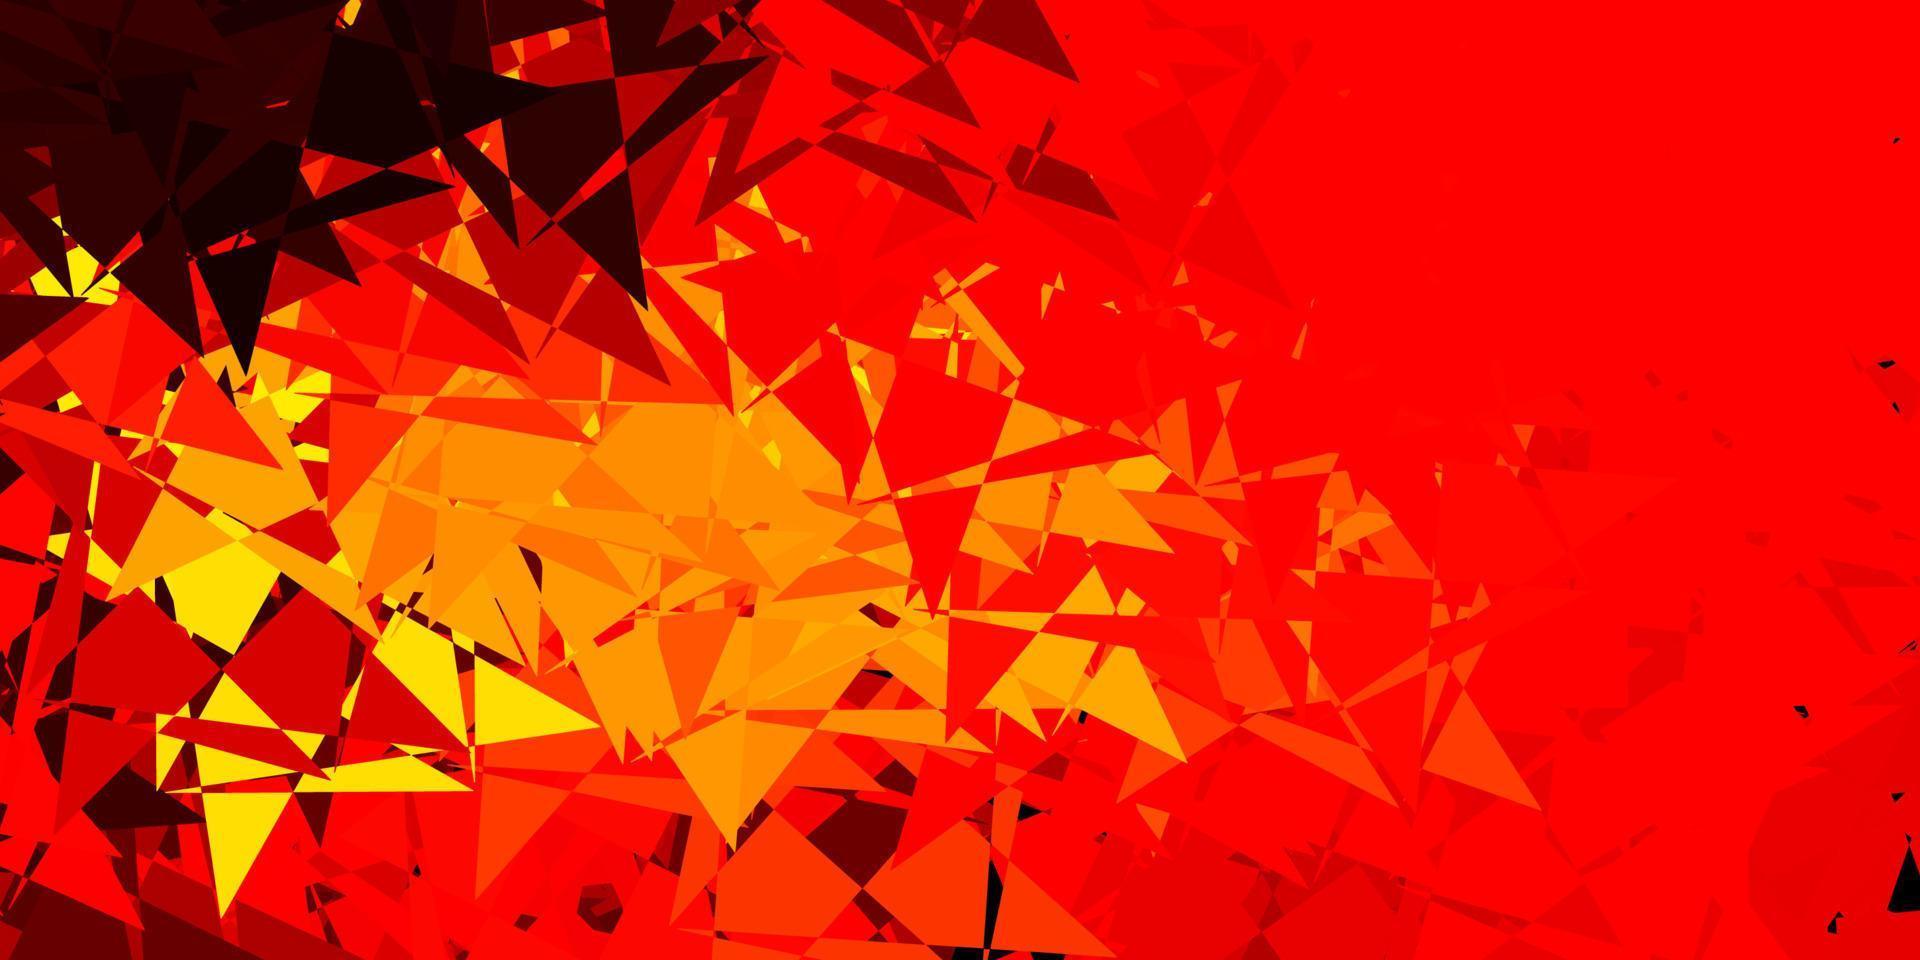 textura vector vermelho, amarelo claro com triângulos aleatórios.